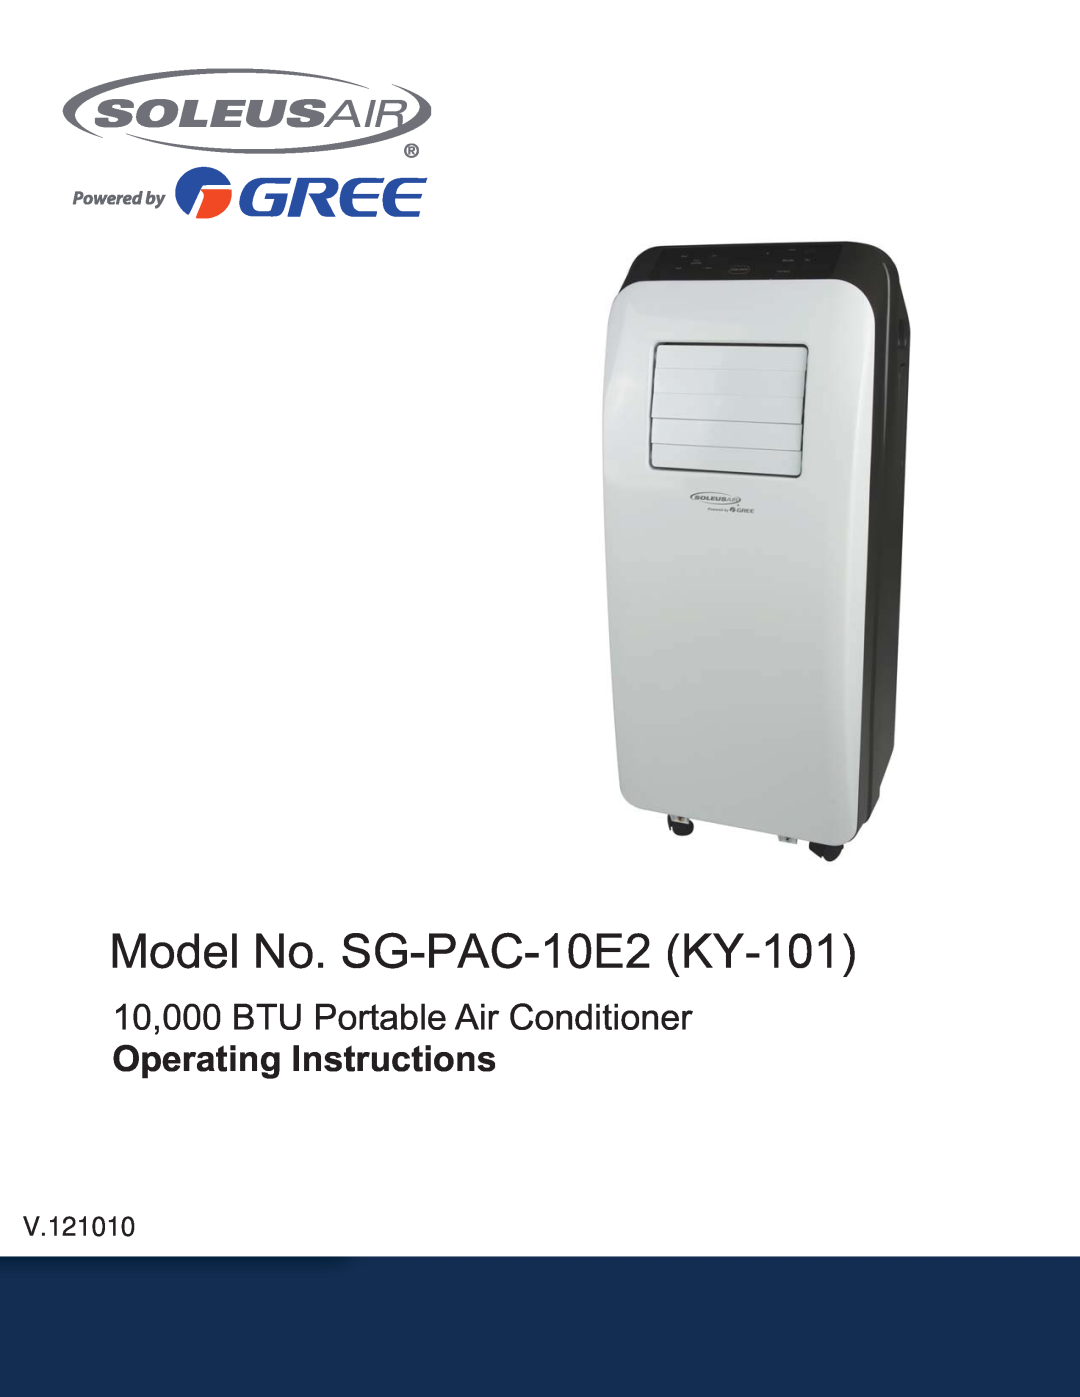 Soleus Air SG-PAC-10E2 (KY-101) manual V.121010, Model No. 6G-PAC-10E2. , 10,000 BTU Portable Air Conditioner 